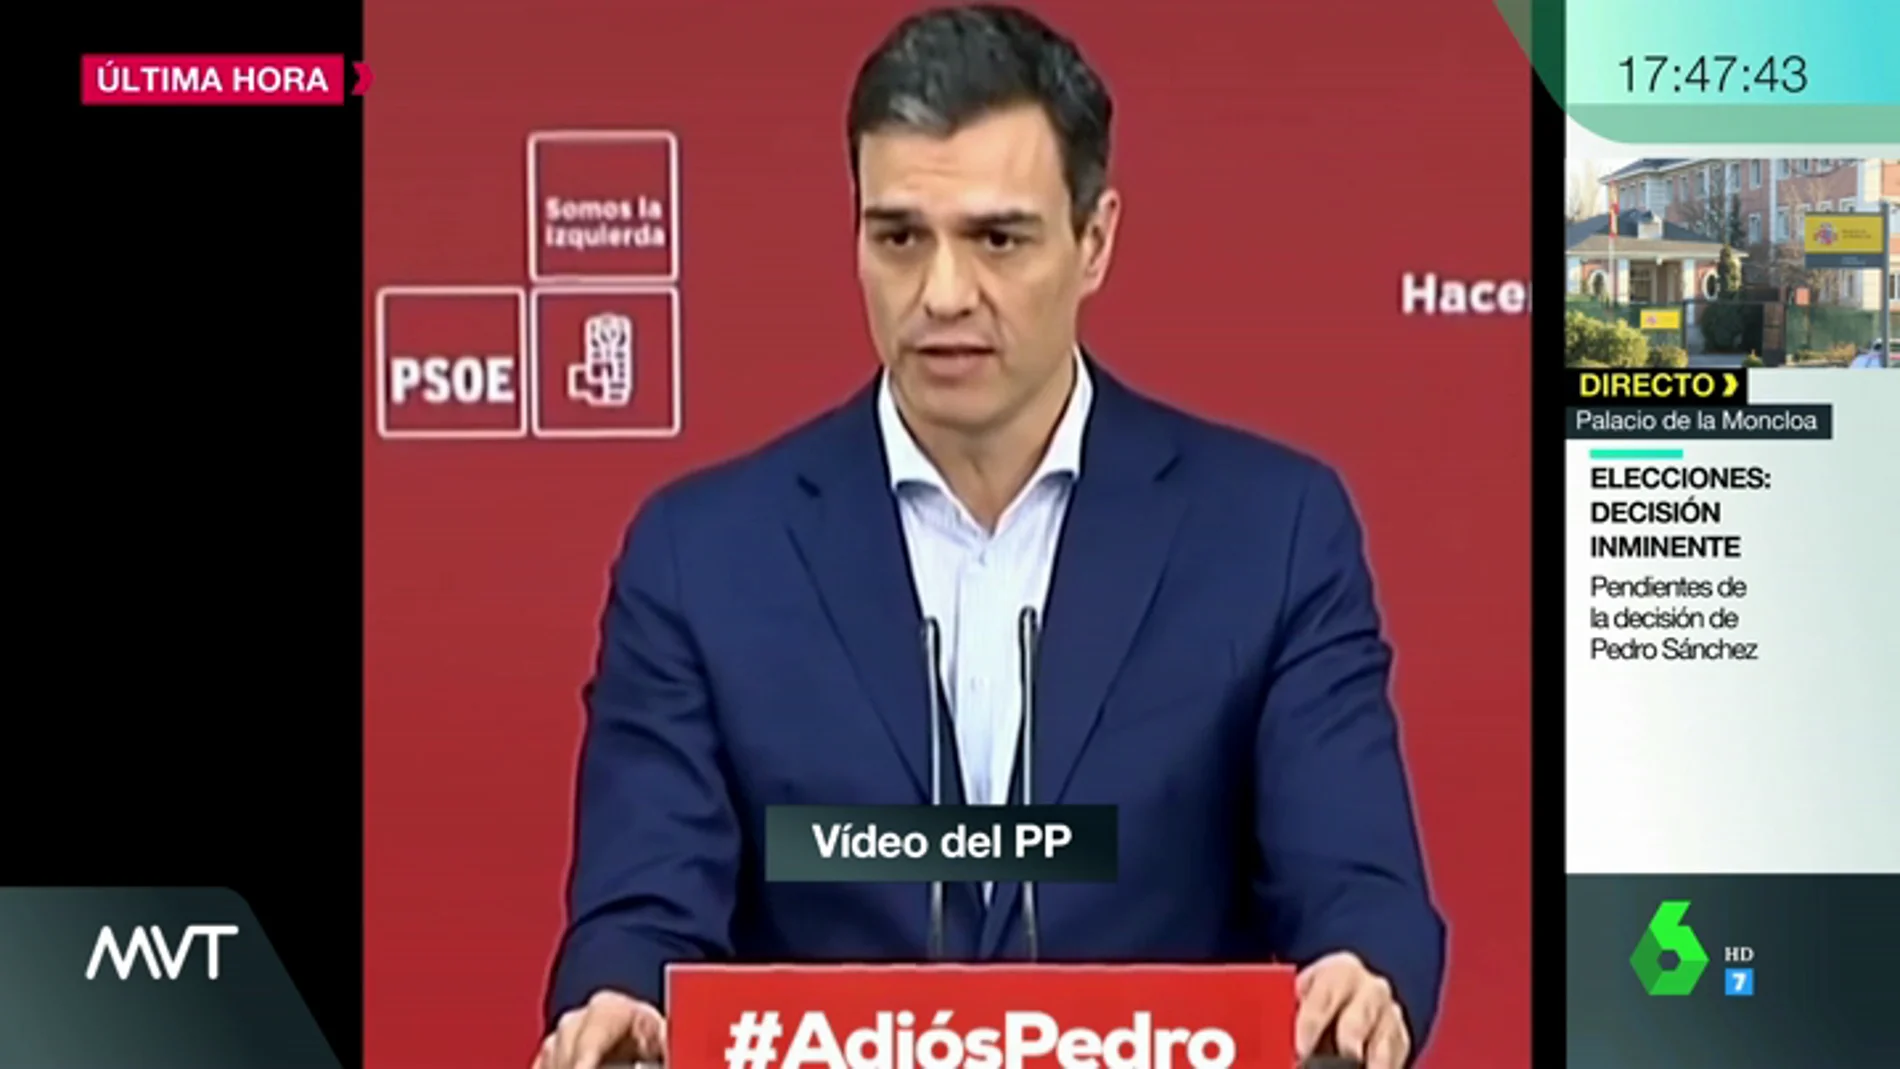 El vídeo en el que el PP le recuerda a Pedro Sánchez cómo pidió a Mariano Rajoy convocar elecciones: "Sin Presupuestos no hay nada que gobernar"